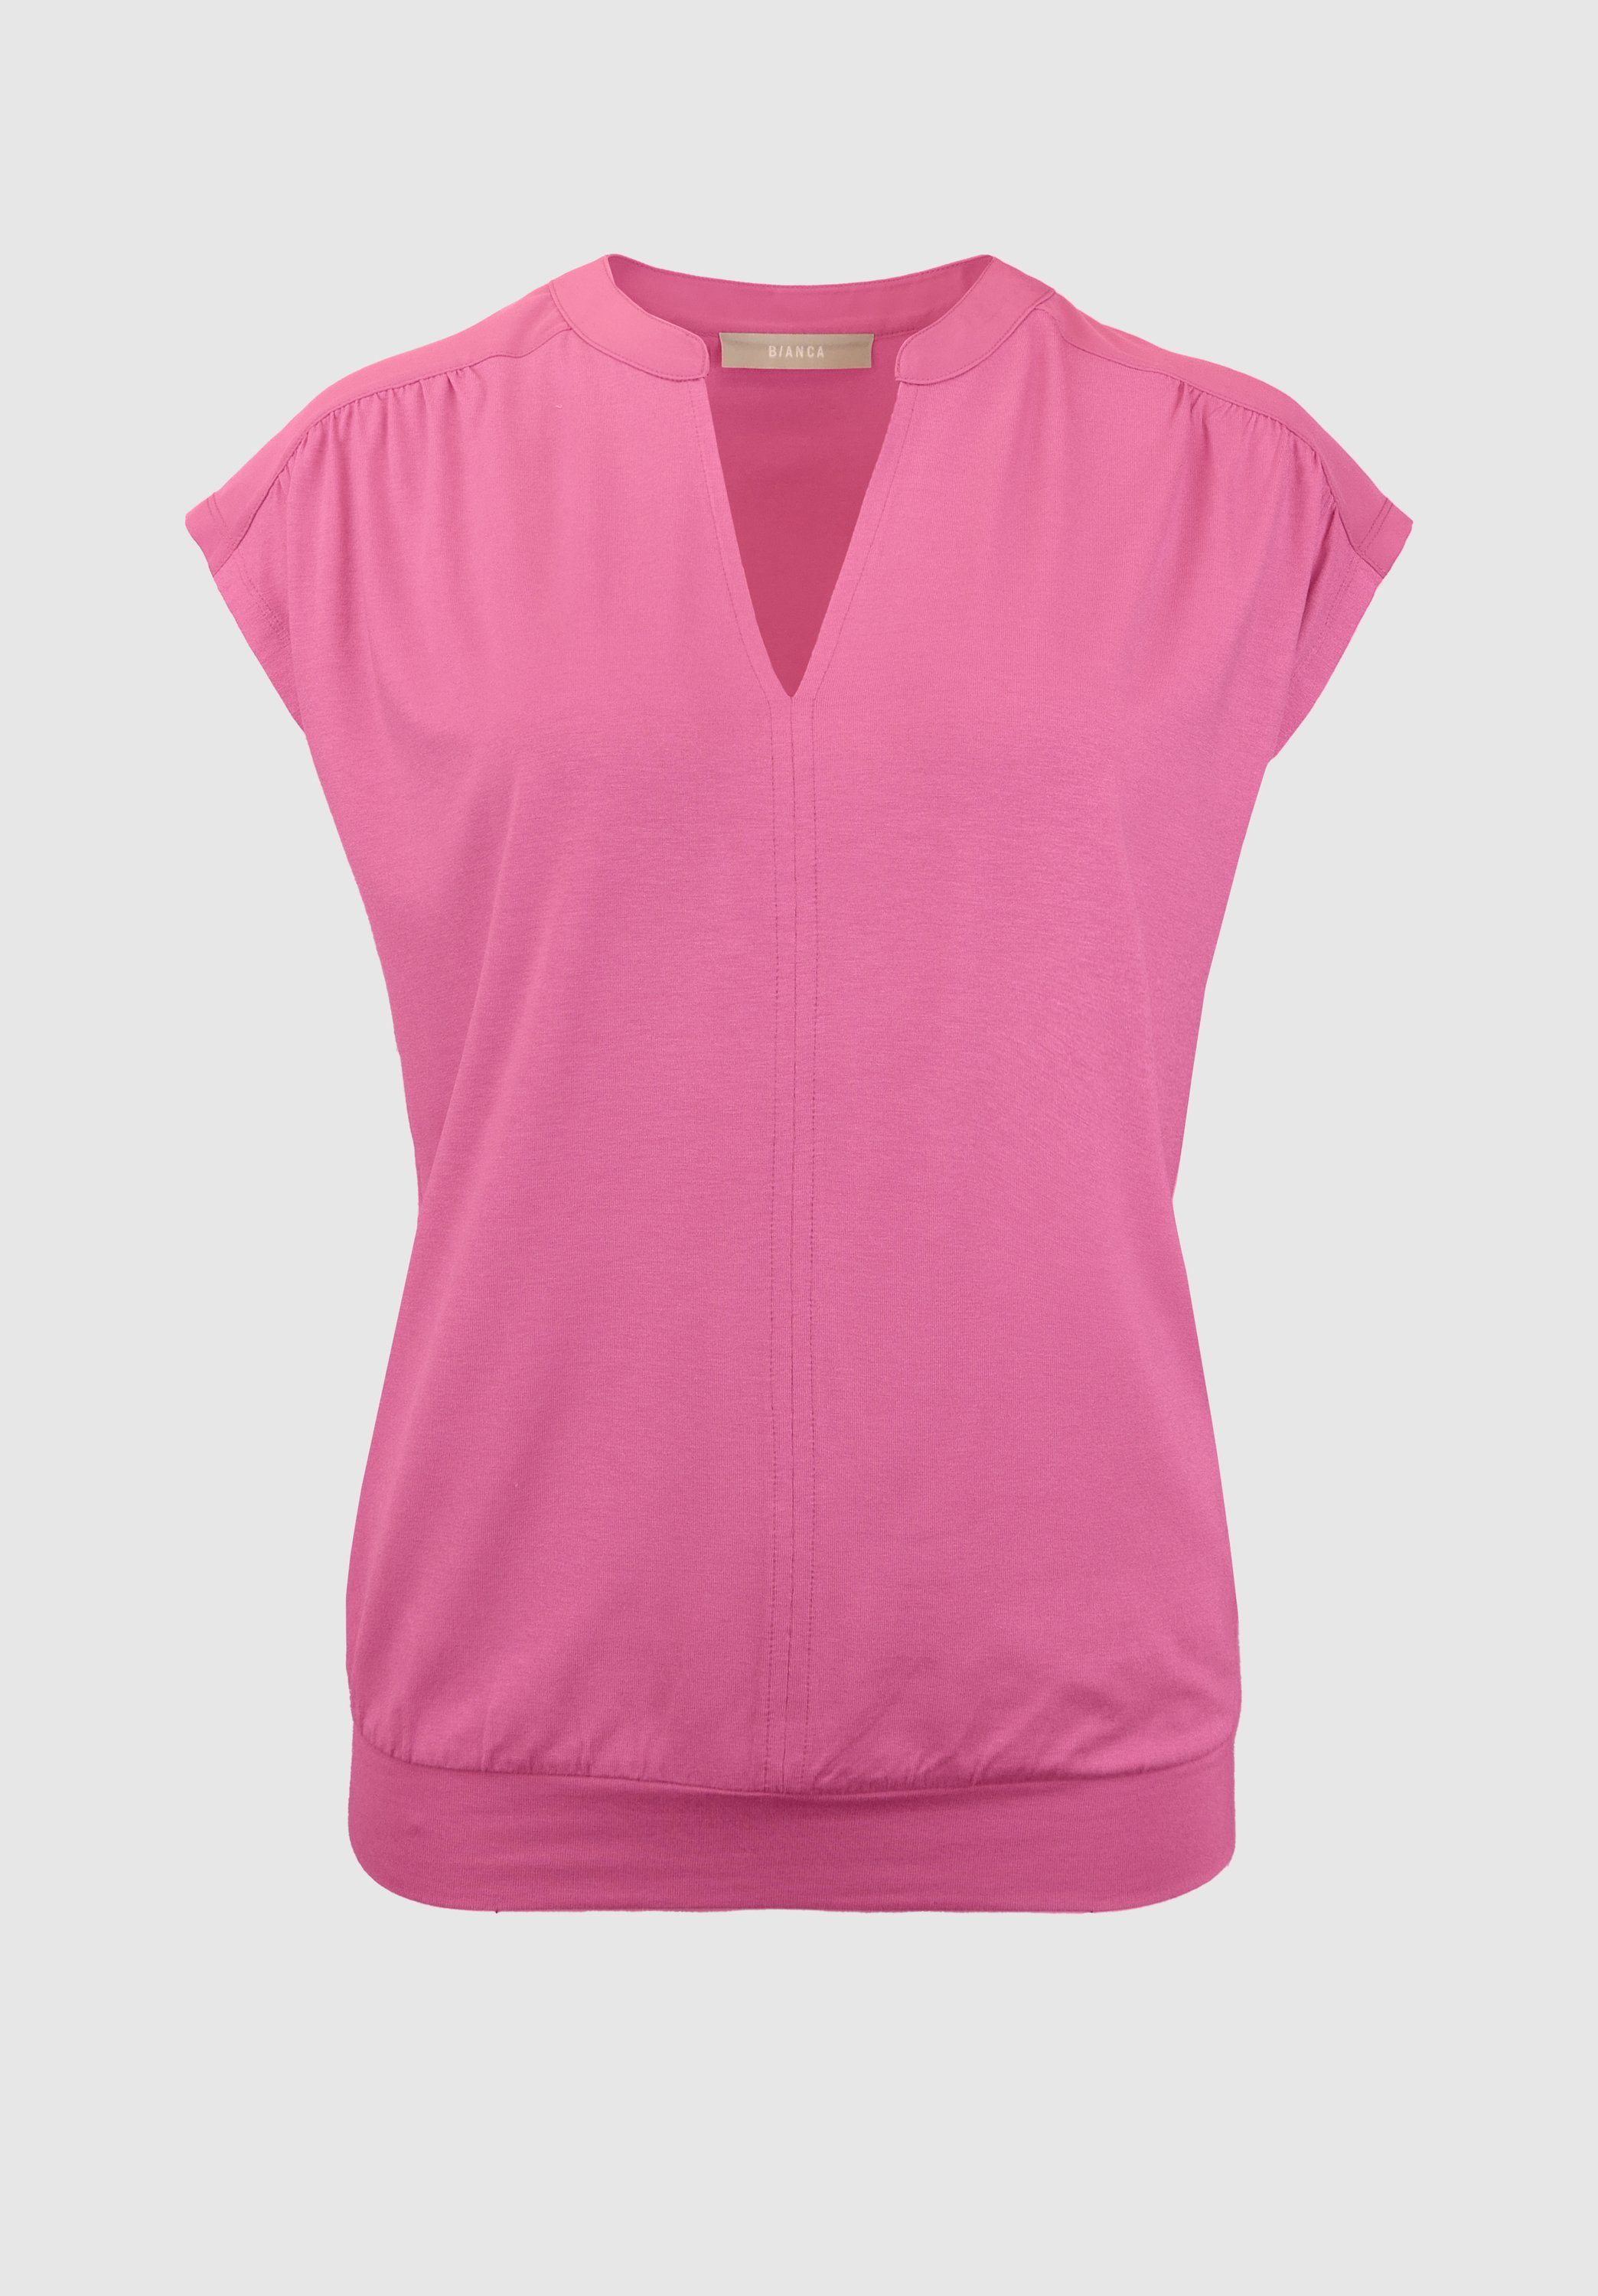 bianca Kurzarmshirt SIA in modernem, lässigen Look und angesagter Farbe pink